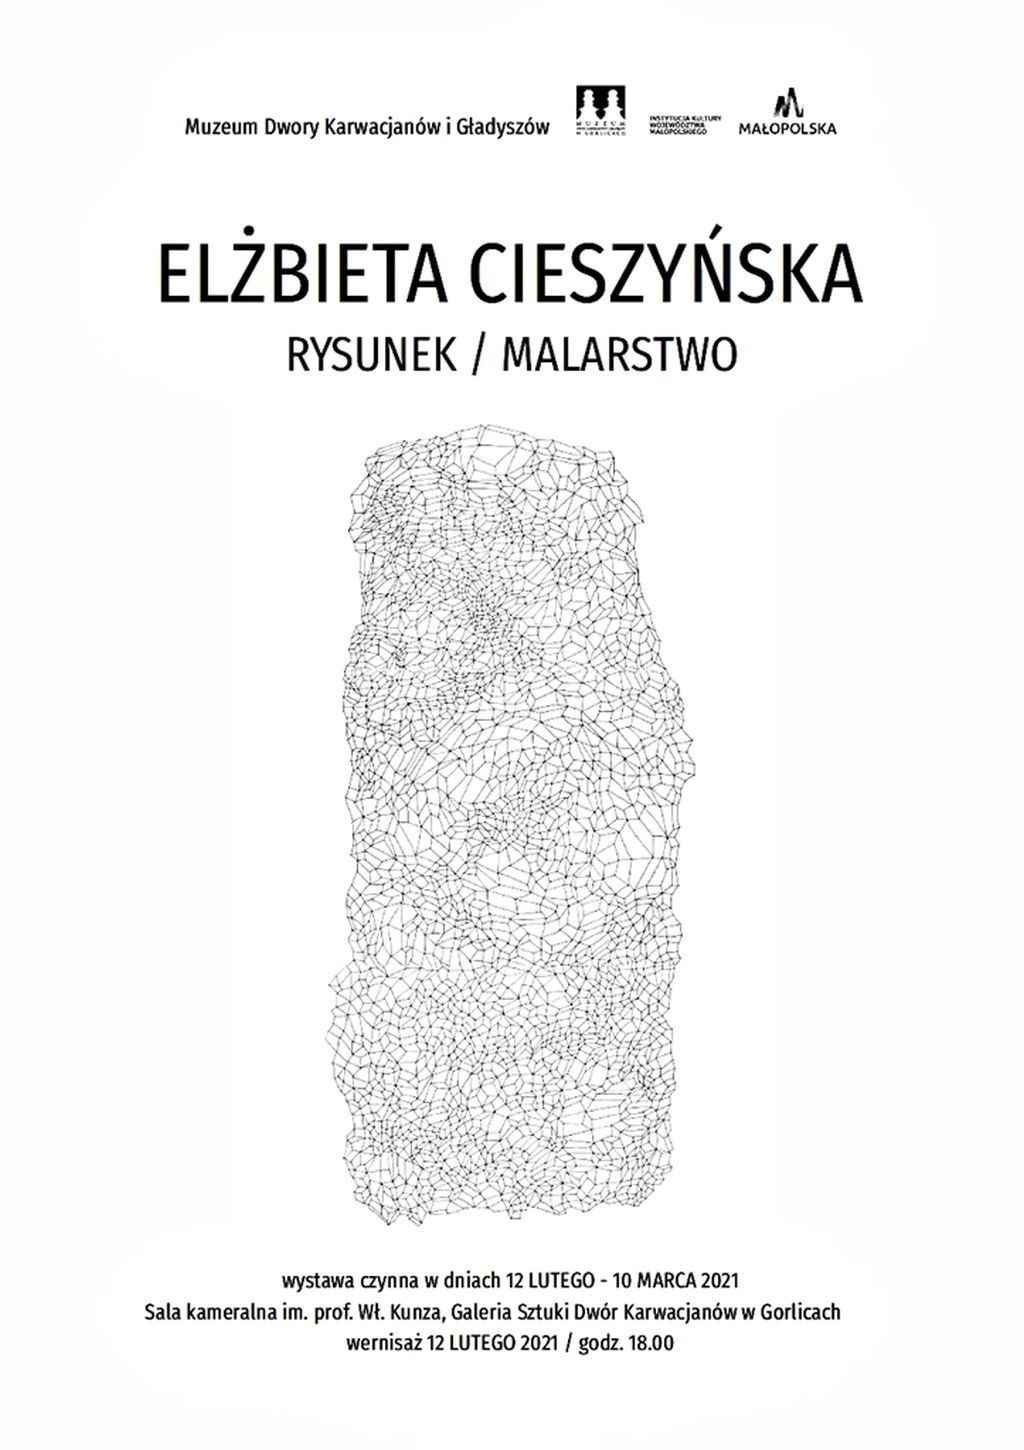 Elżbieta Cieszyńska / rysunek, malarstwo – wystawa